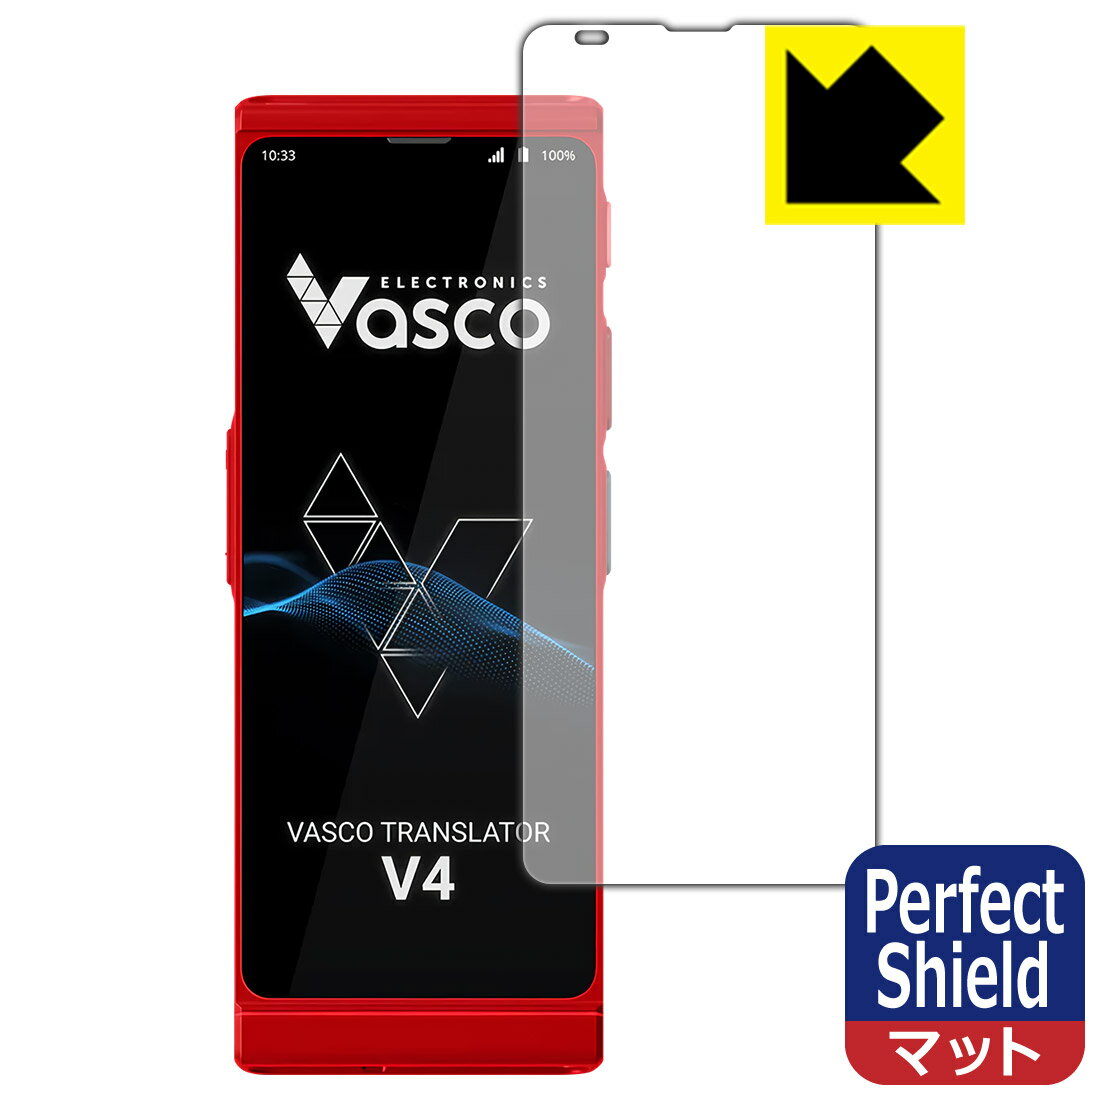 【スーパーSALE 10%OFF】PDA工房 Vasco Translator V4 対応 PerfectShield 保護 フィルム 反射低減 防指紋 日本製 自社製造直販